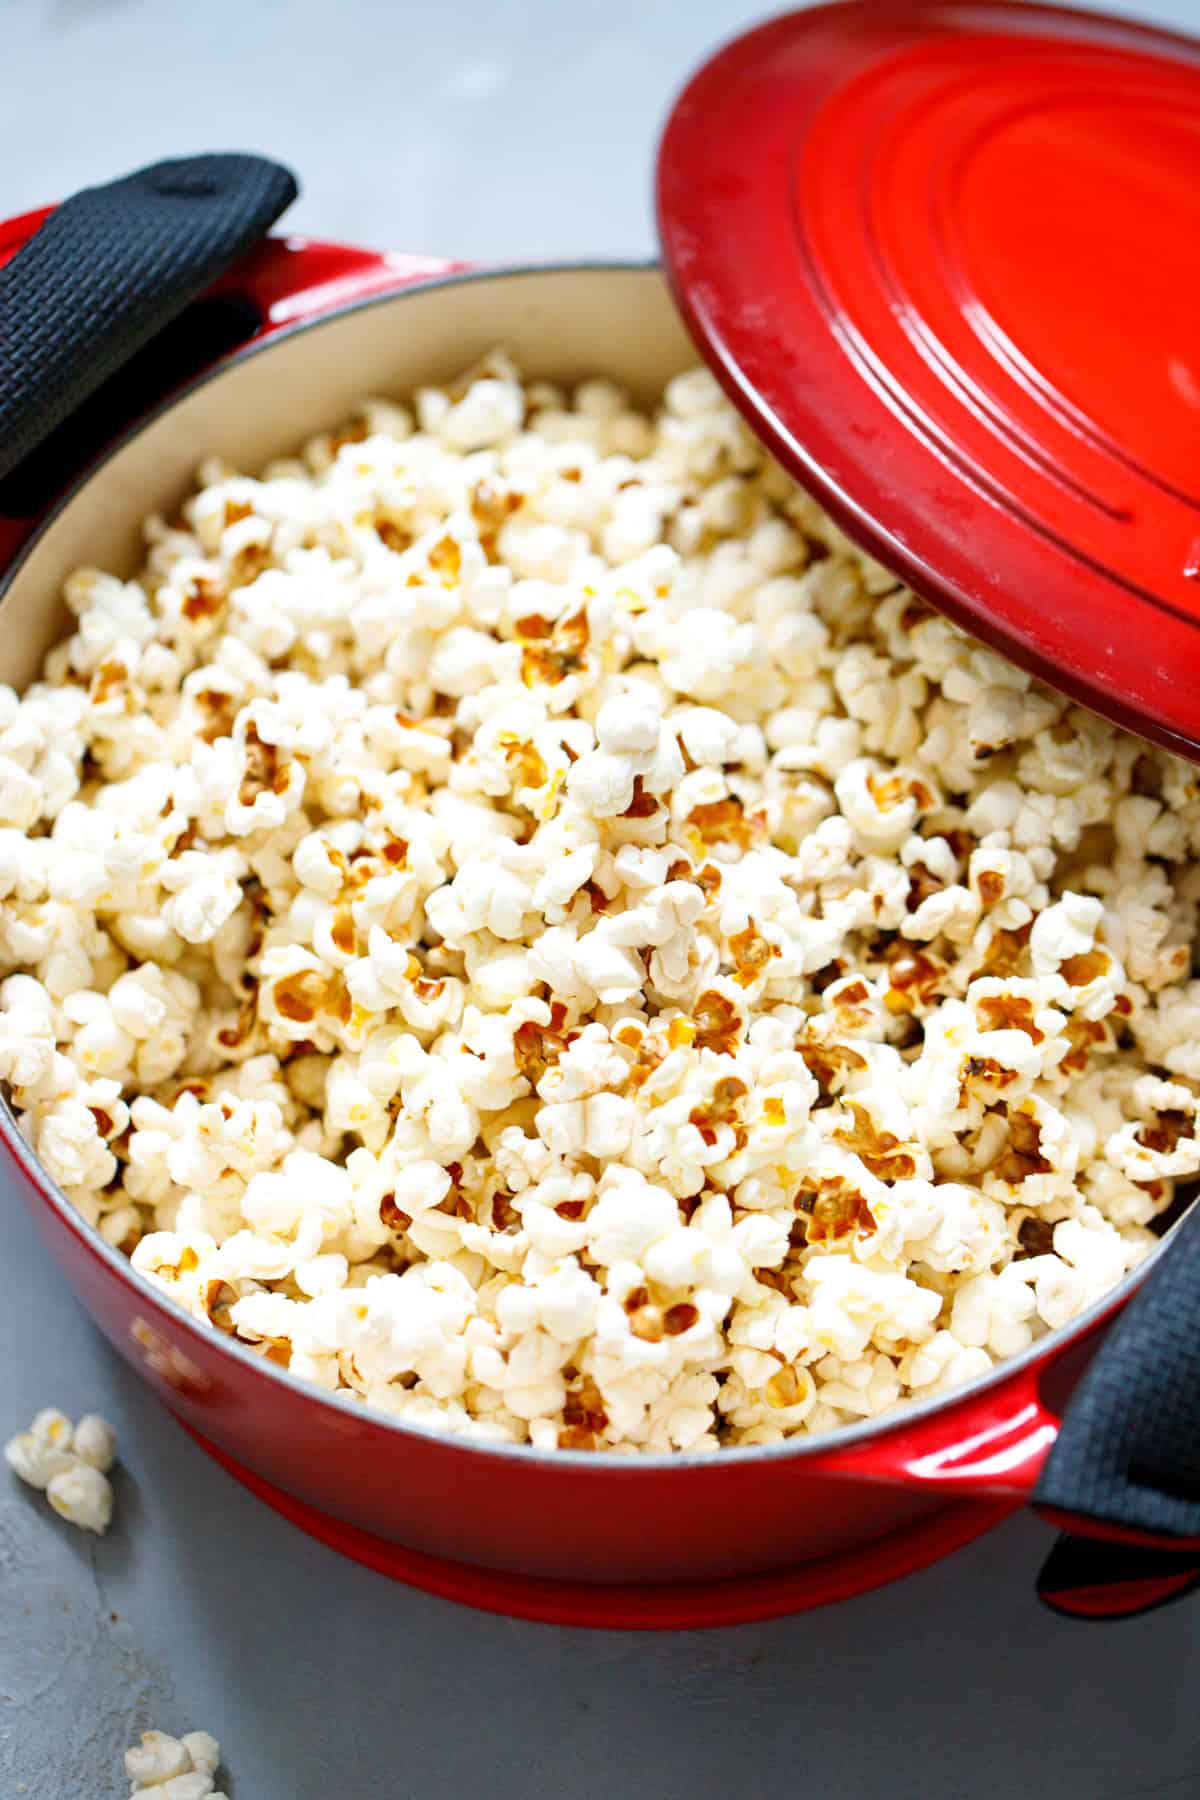 How To Make Stovetop Popcorn - Easy Popcorn Recipe